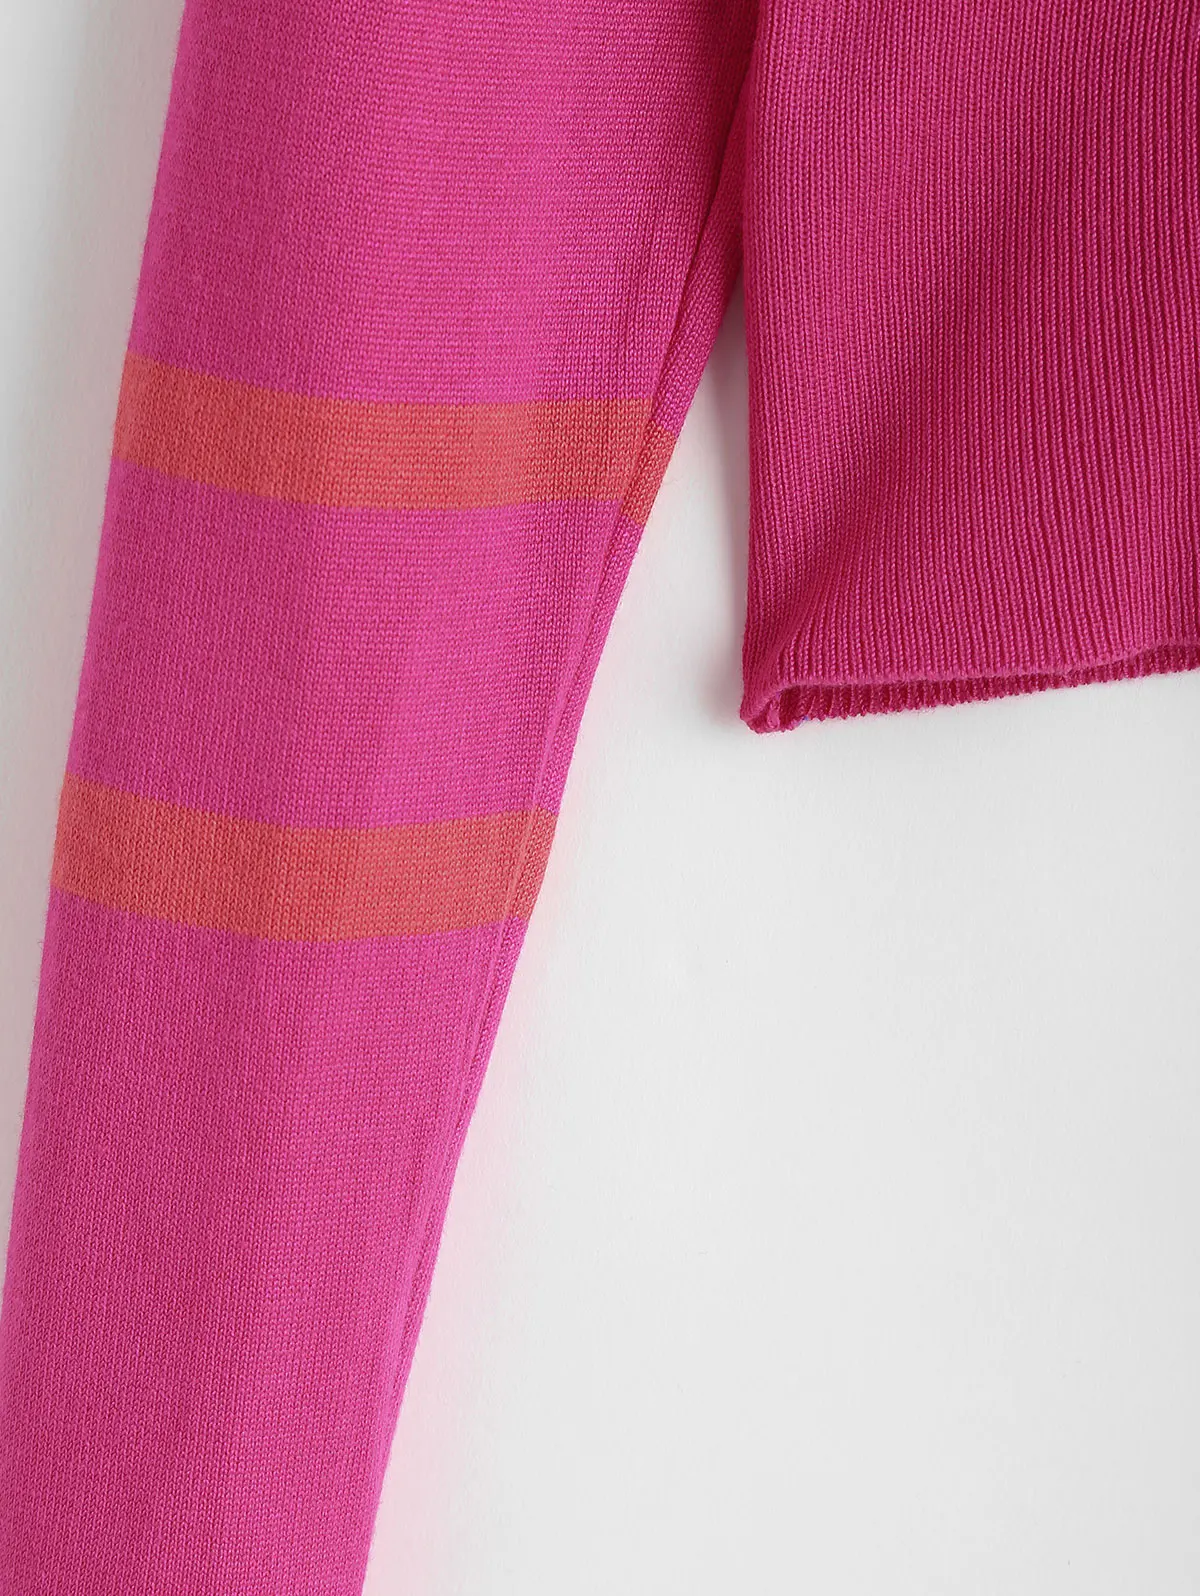 ZAFUL полосатый свитер с круглым вырезом укороченный топ пуловер с эластичной талией женские осенние классические Зимние Повседневные свитера с круглым вырезом